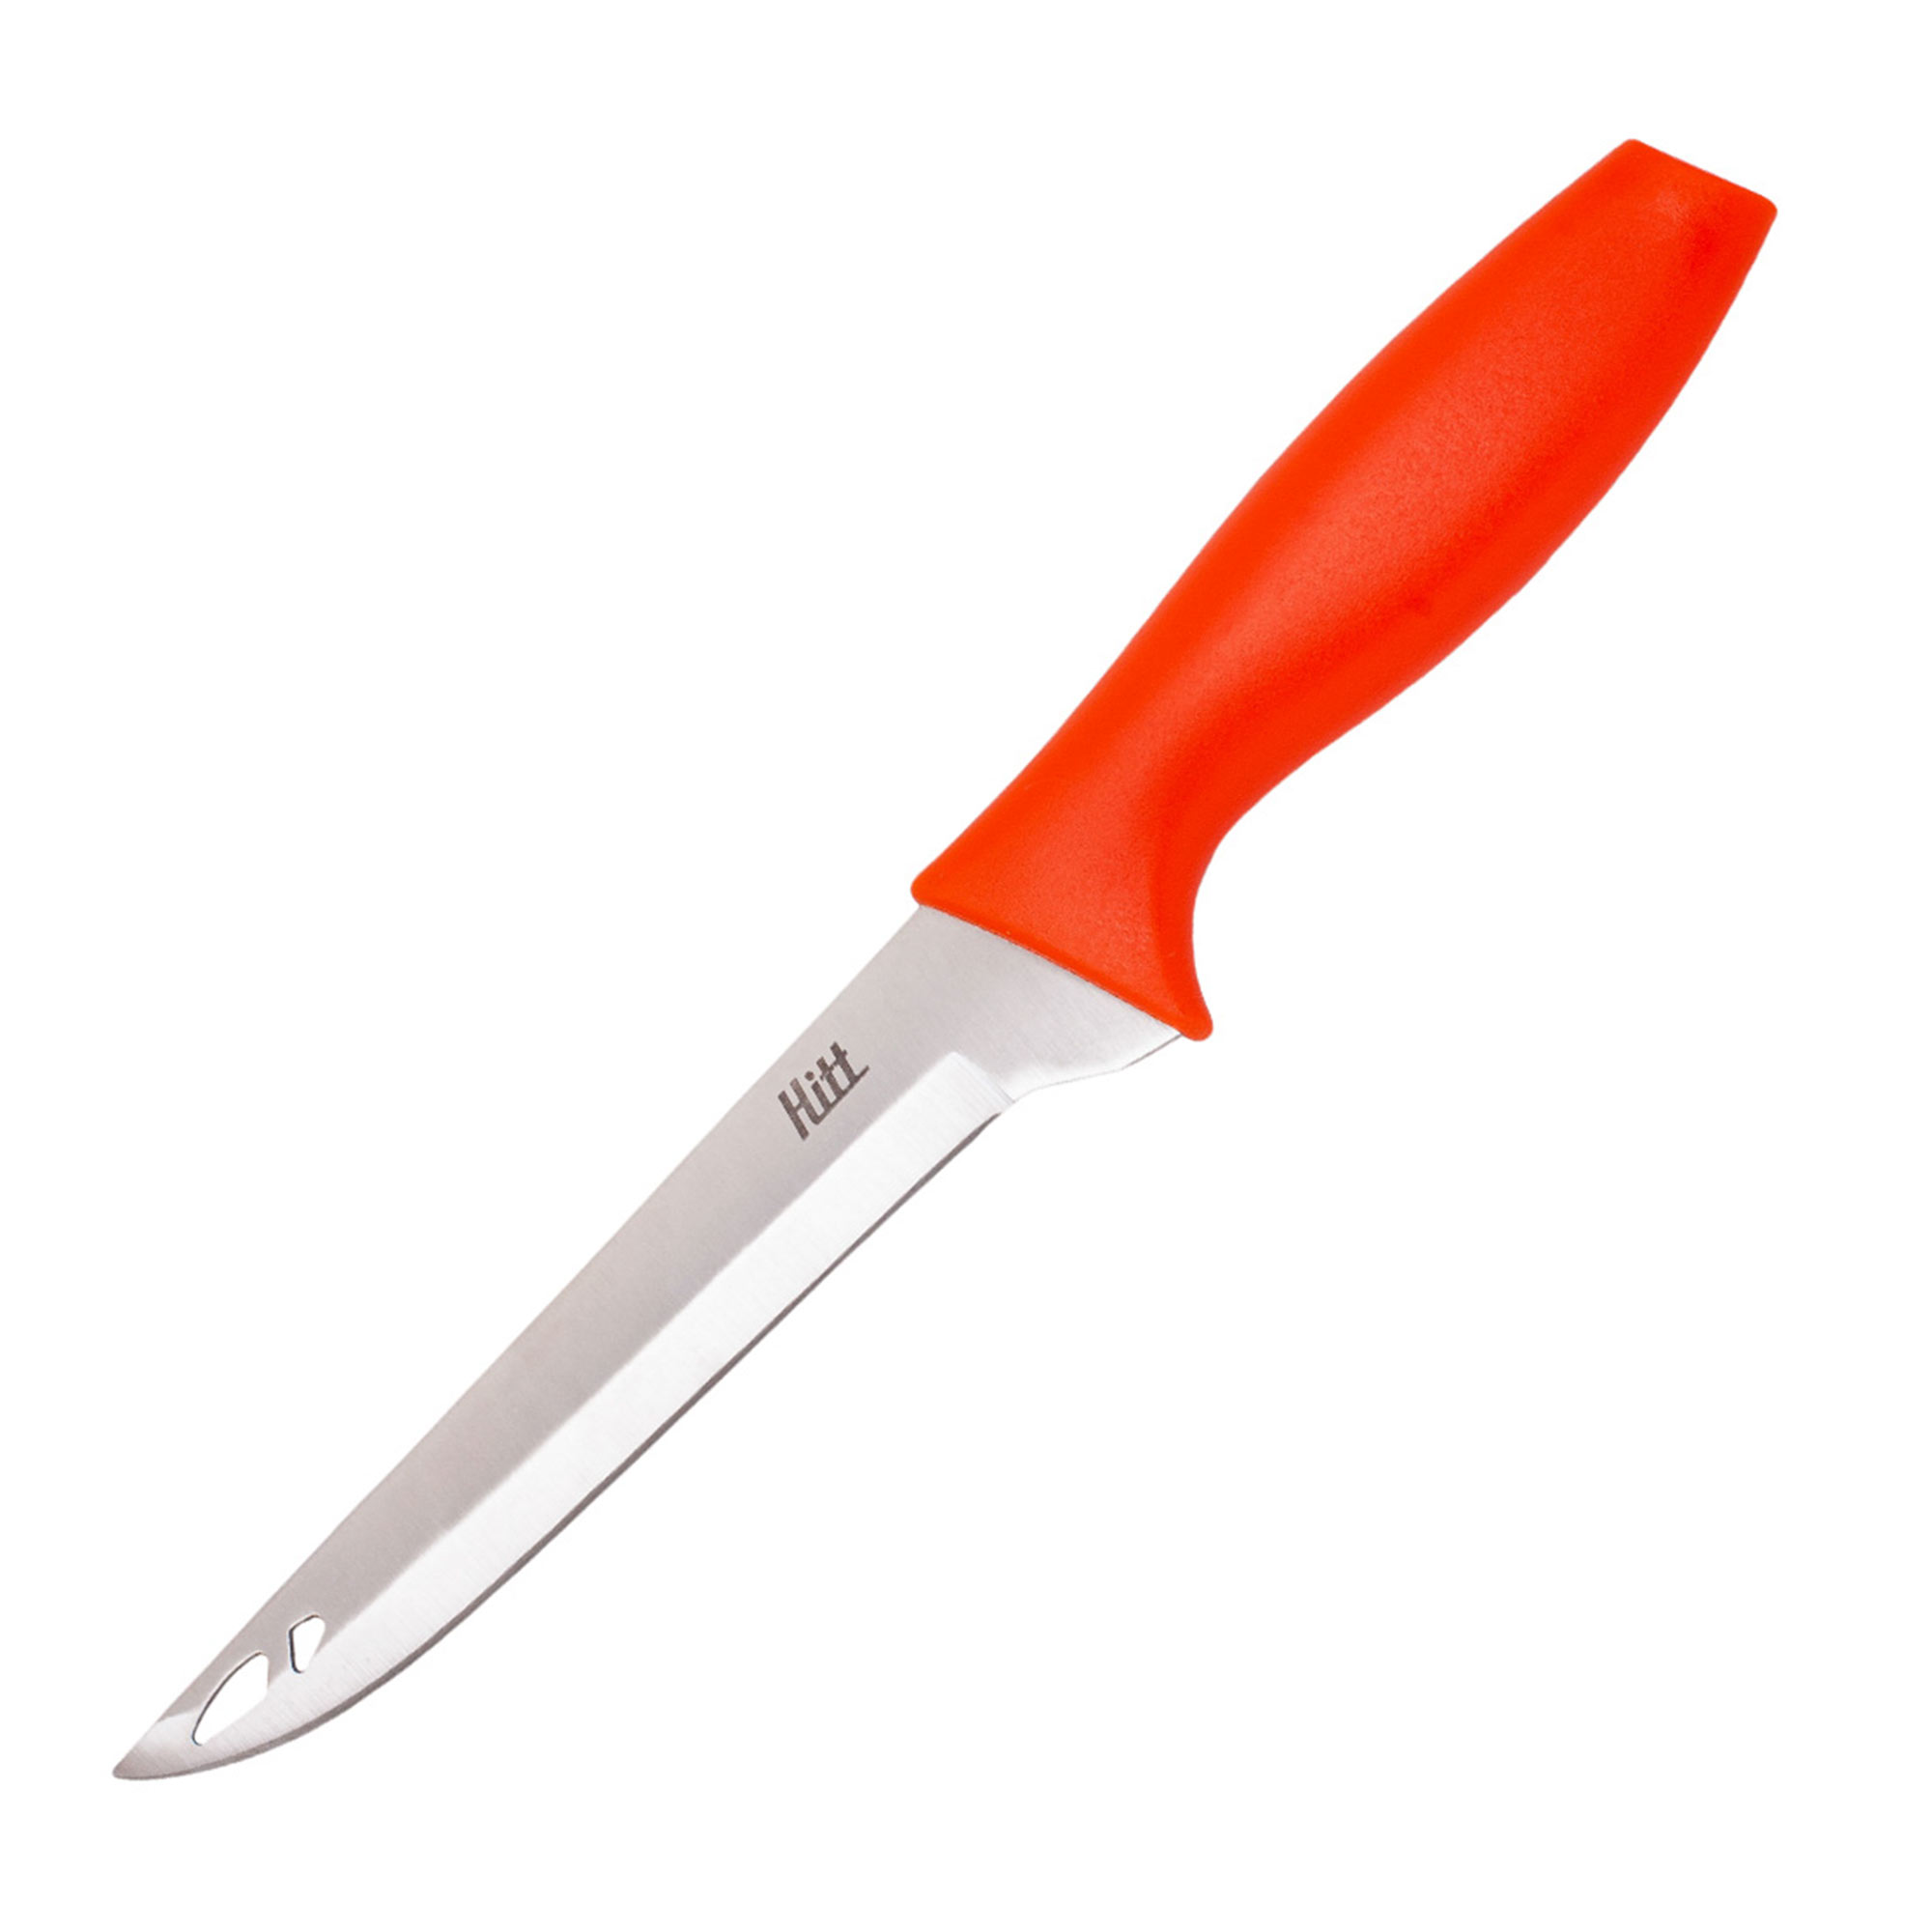 Нож Hitt Colorfest филейный 15 см филейный нож gipfel magestic 6971 15 см